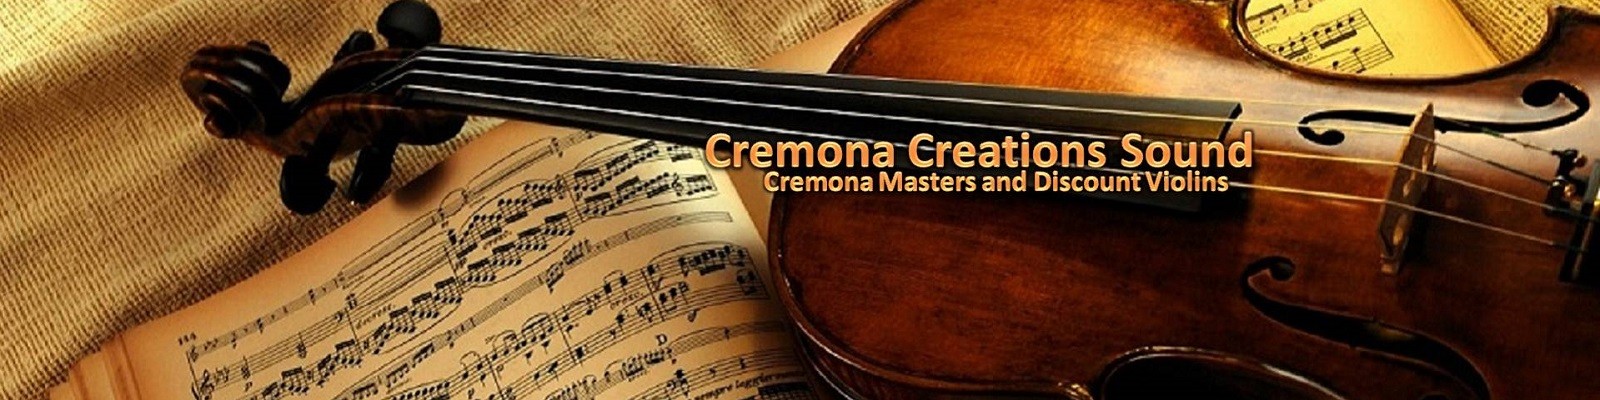 Cremona Creations Sound